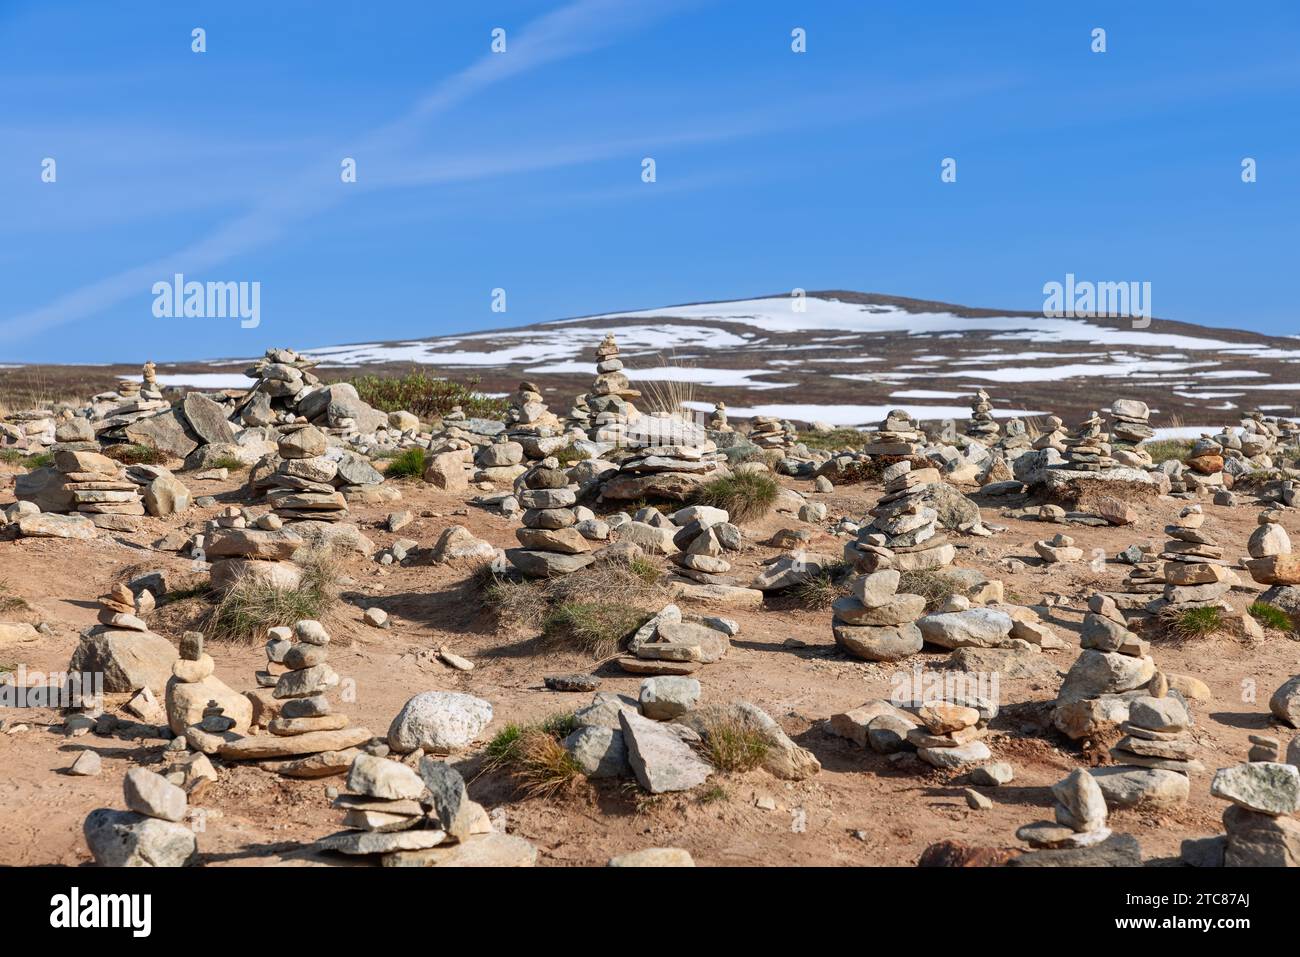 Ein ruhiger Blick auf handgefertigte Steinpyramiden, die den Polarkreis symbolisieren, in der Nähe des Polarkreises Center in Rana, Nordland, Norwegen Stockfoto